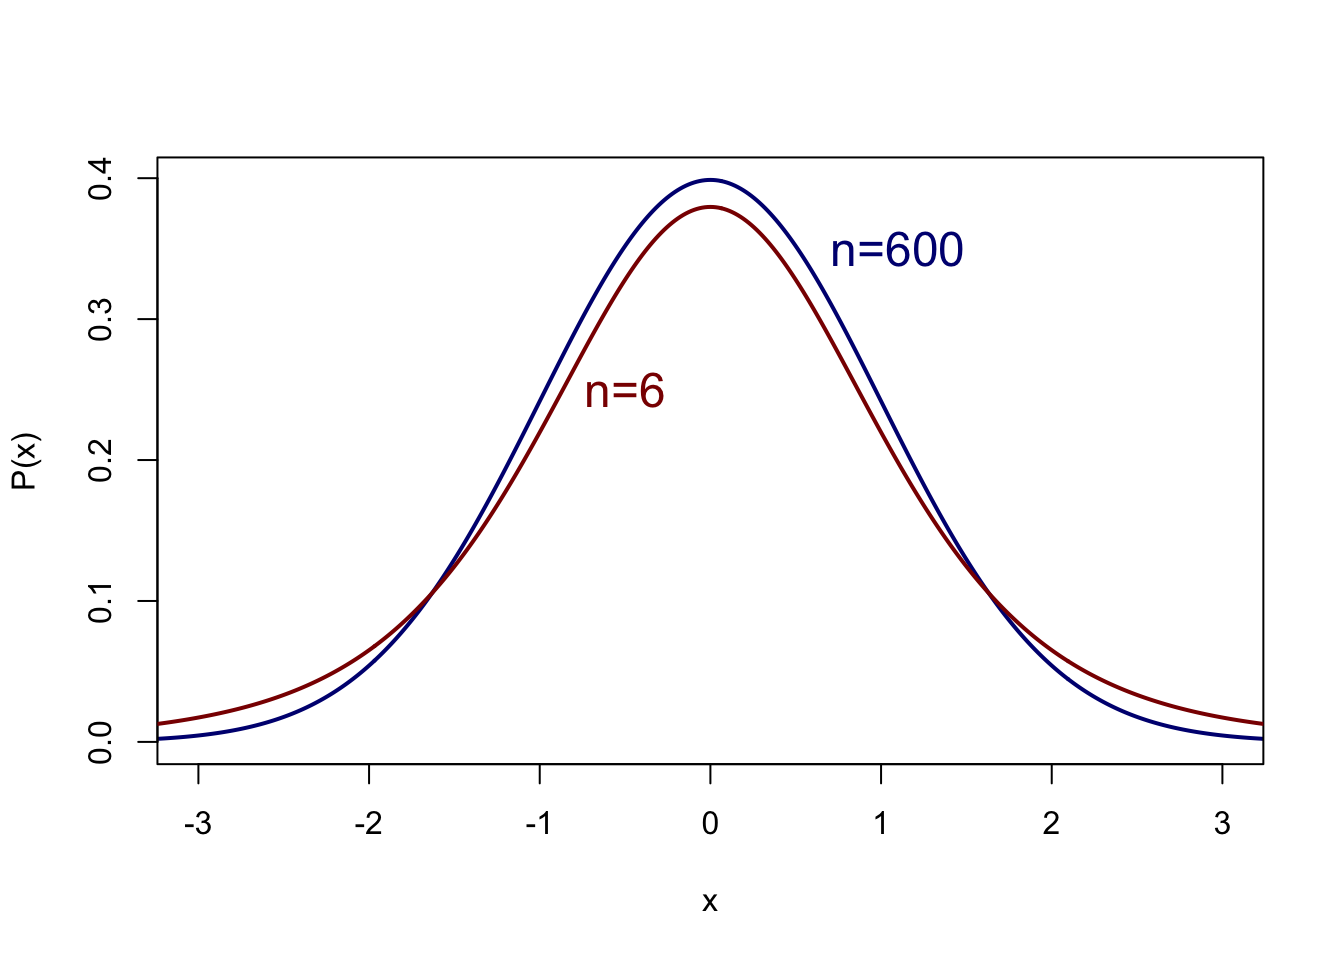 Kansverdeling volgens de t-verdeling van een variabele $x$ met gemiddelde 0 en standaarddeviatie 1, voor n=600 en n=6.